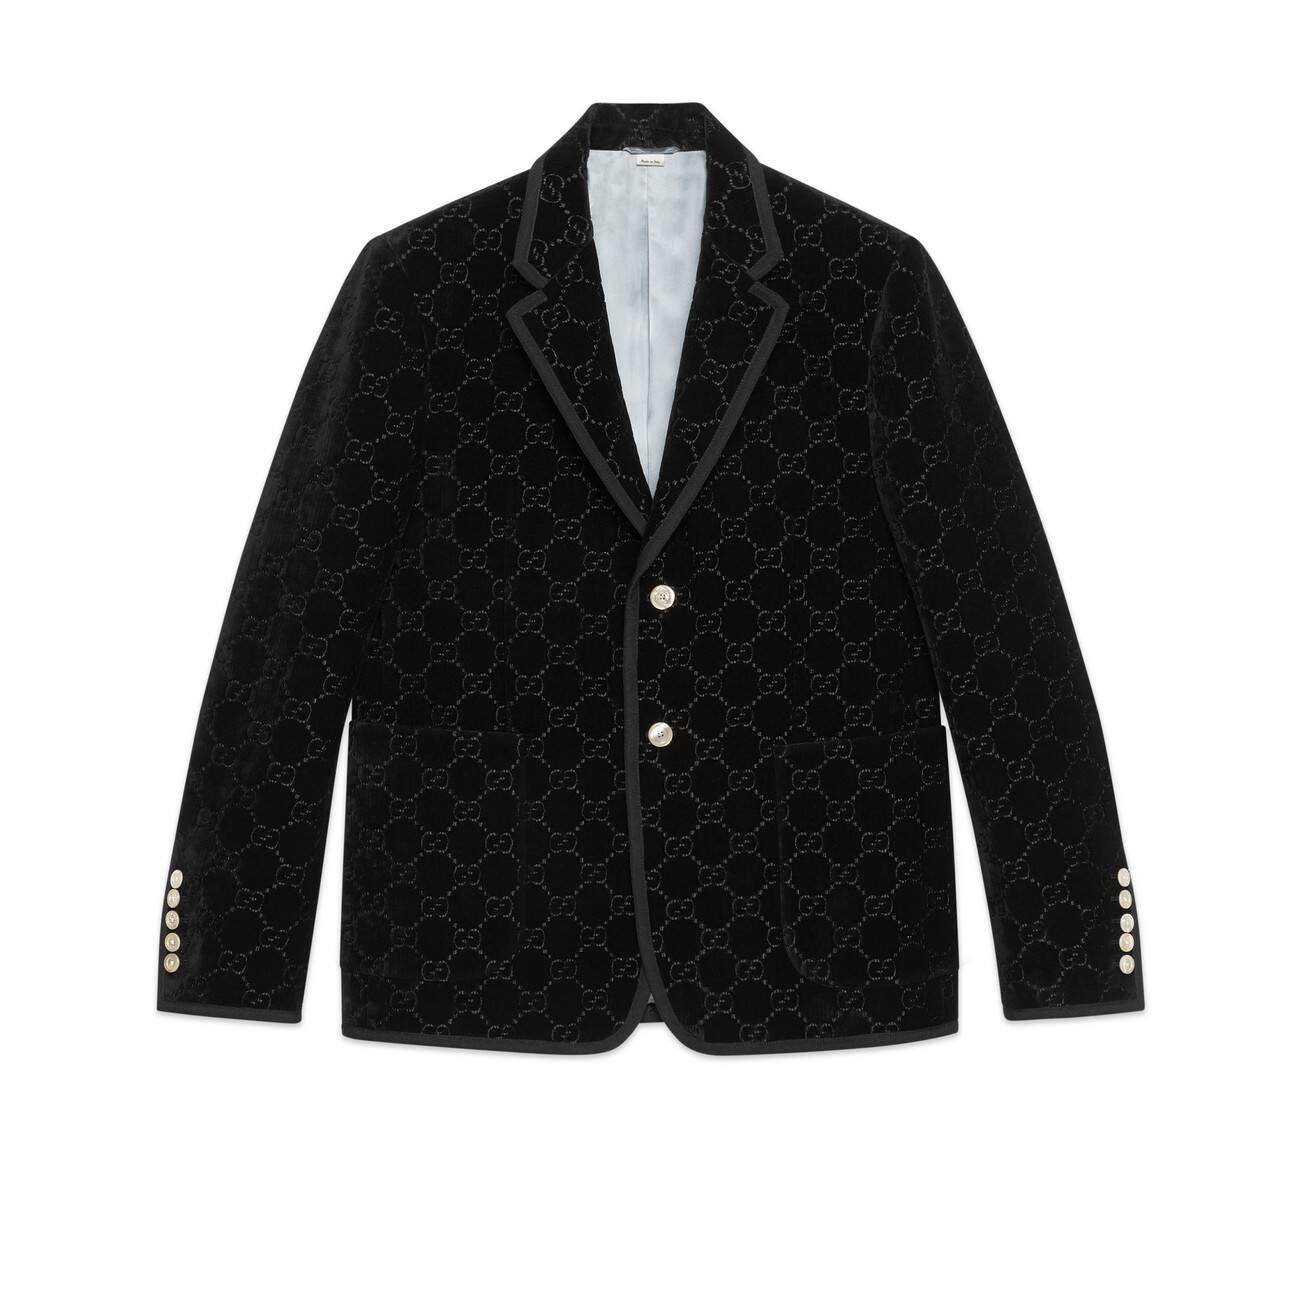 Gucci Palma GG Velvet Jacket in White for Men - Lyst